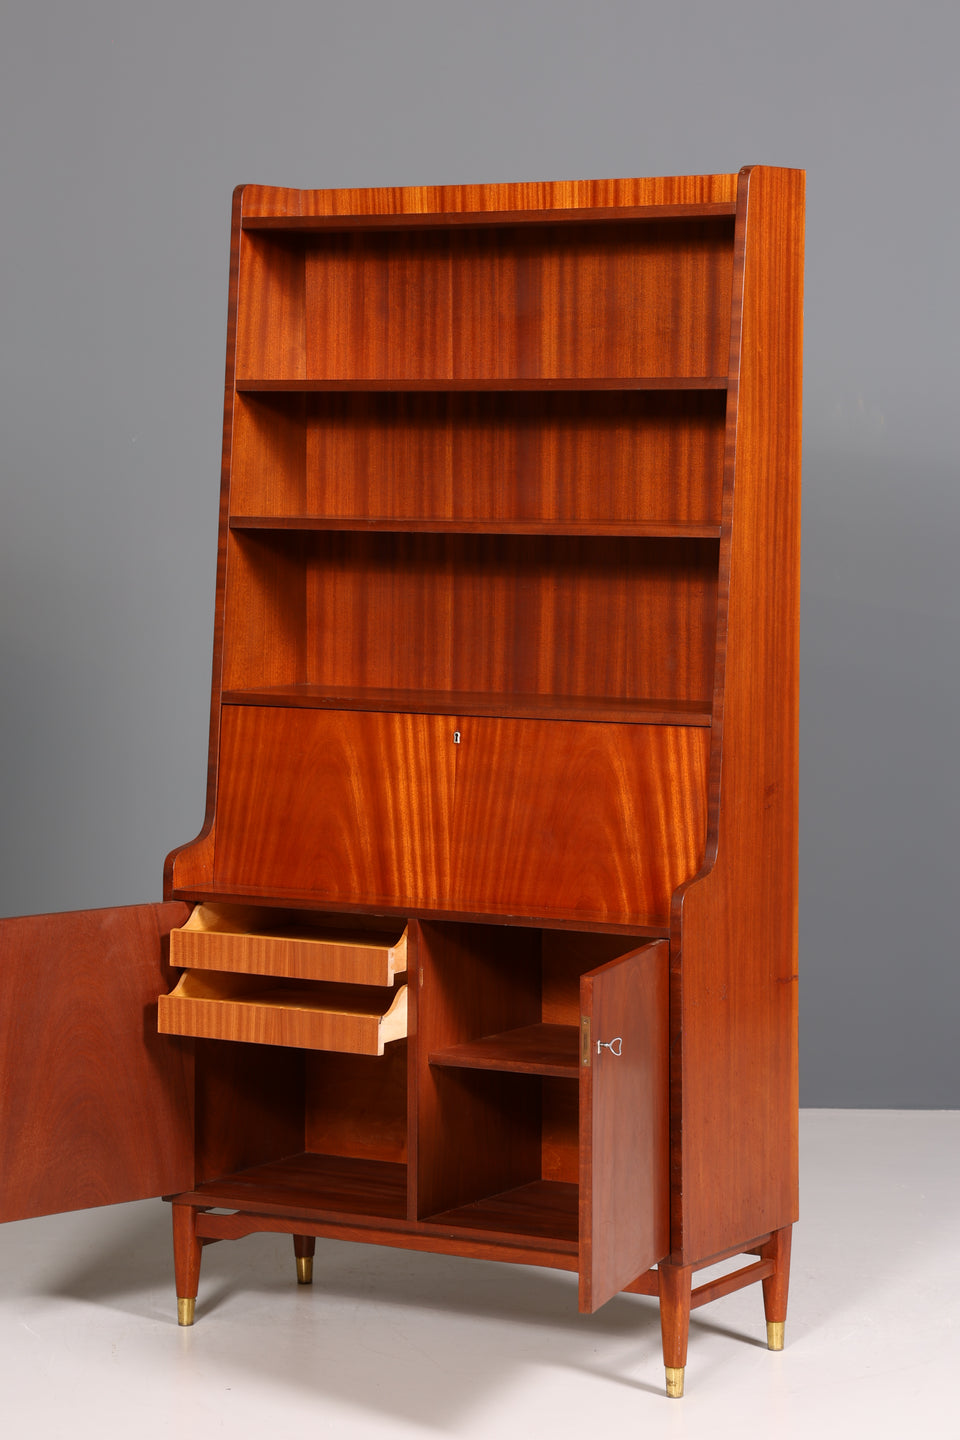 Traumhafter Mid Century Schrank Retro Sekretär Bücherregal Vintage Highboard Holz Regal 60er Jahre